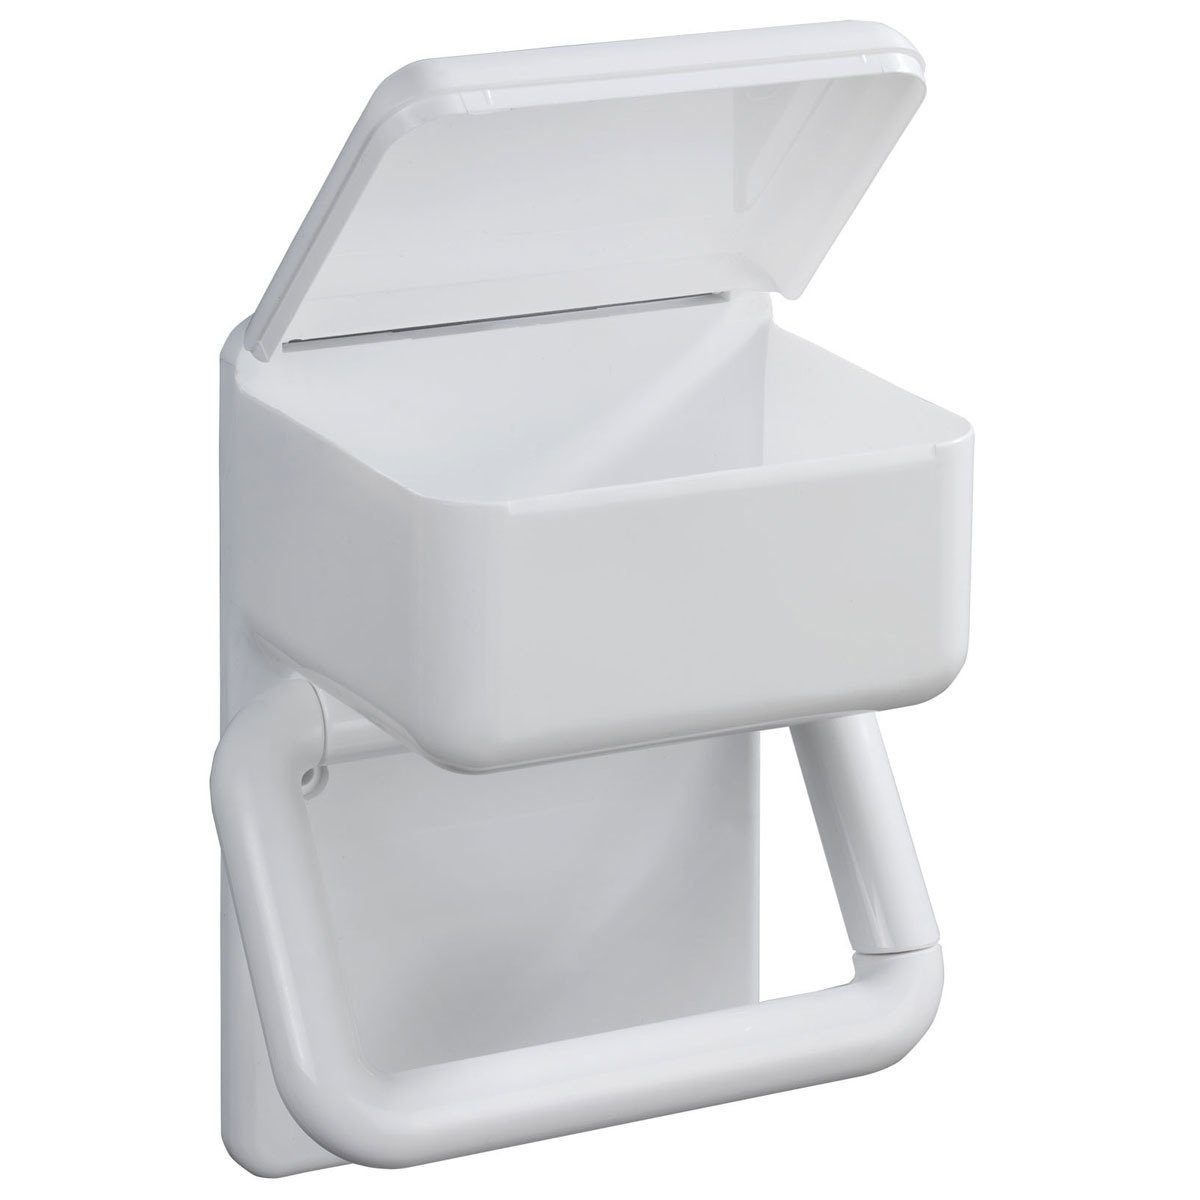 WENKO Toilettenpapierhalter, Offener Rollenhalter für die leichte Entnahme  von Toilettenpapier online kaufen | OTTO